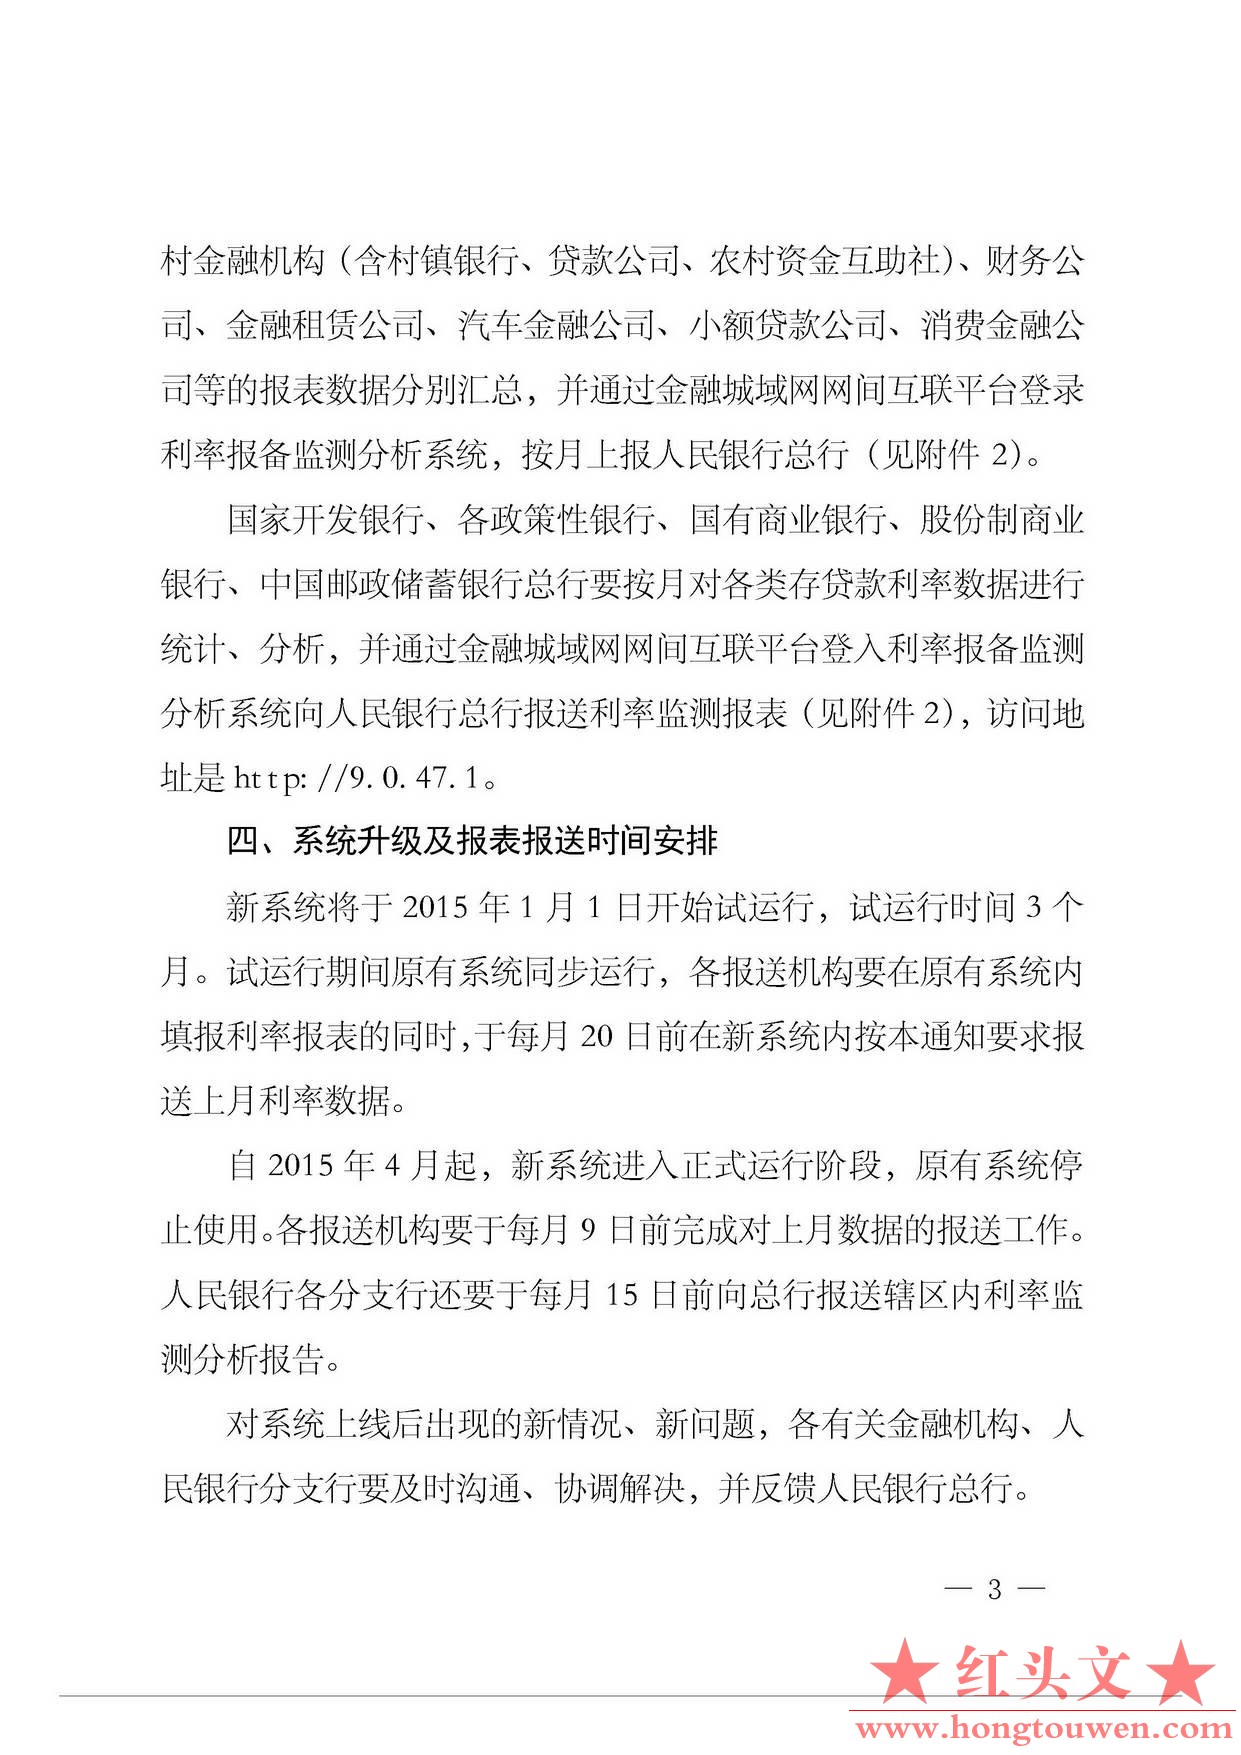 银发[2014]375号-中国人民银行关于进一步完善利率监测报备制度的通知_页面_3.jpg.jpg